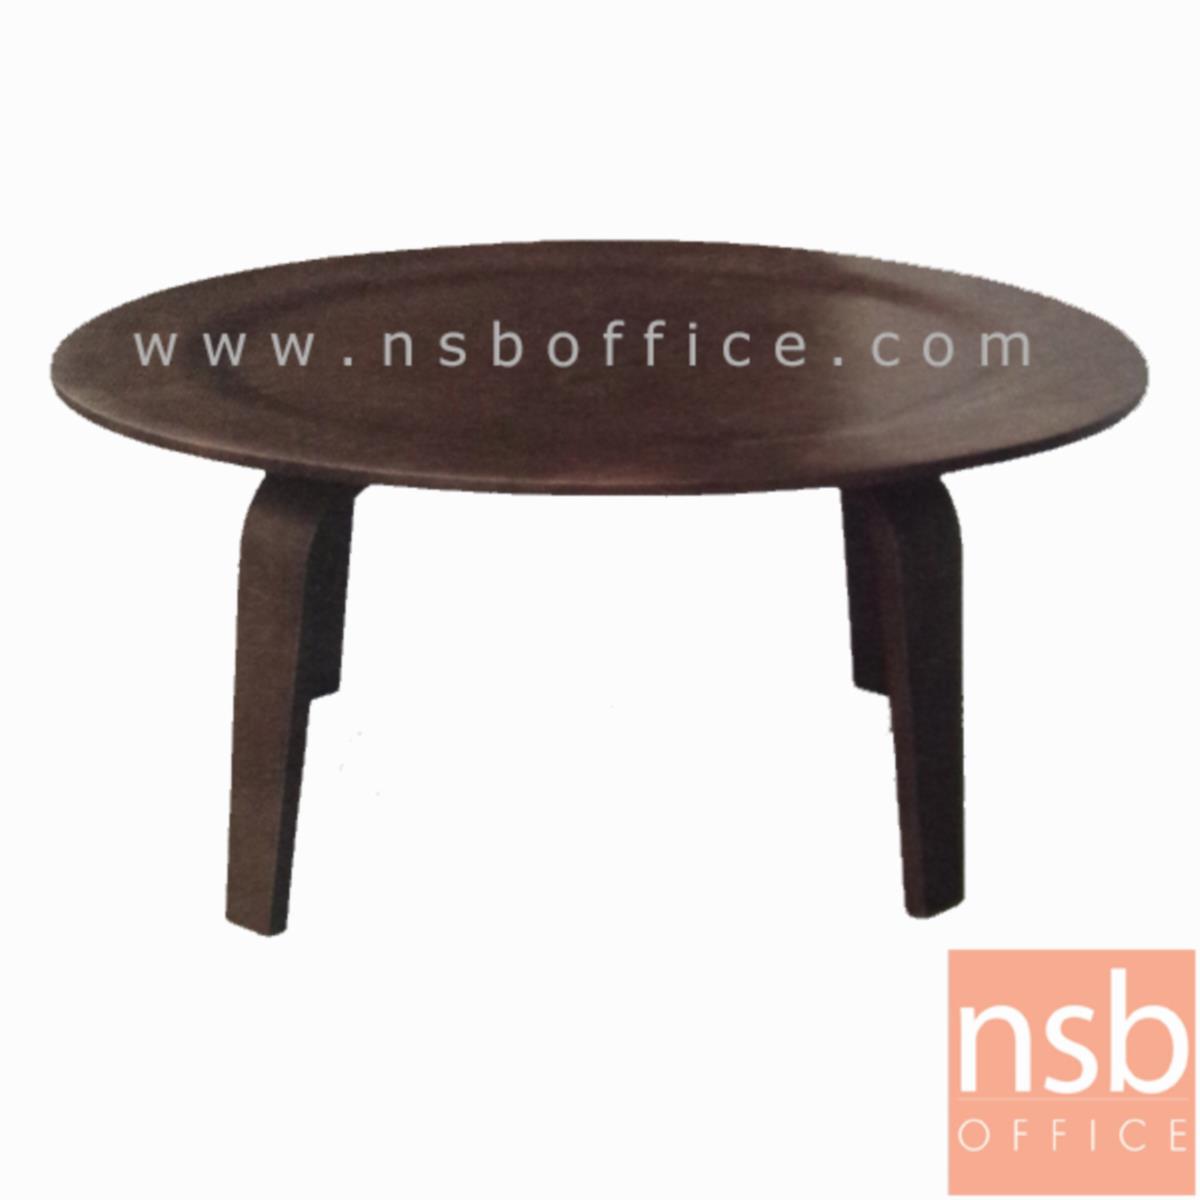 B13A176:โต๊ะกลางไม้วงกลม รุ่น Jesbelle (เจสเบล) ขนาด 87Di cm. สีไม้สีวอลนัท